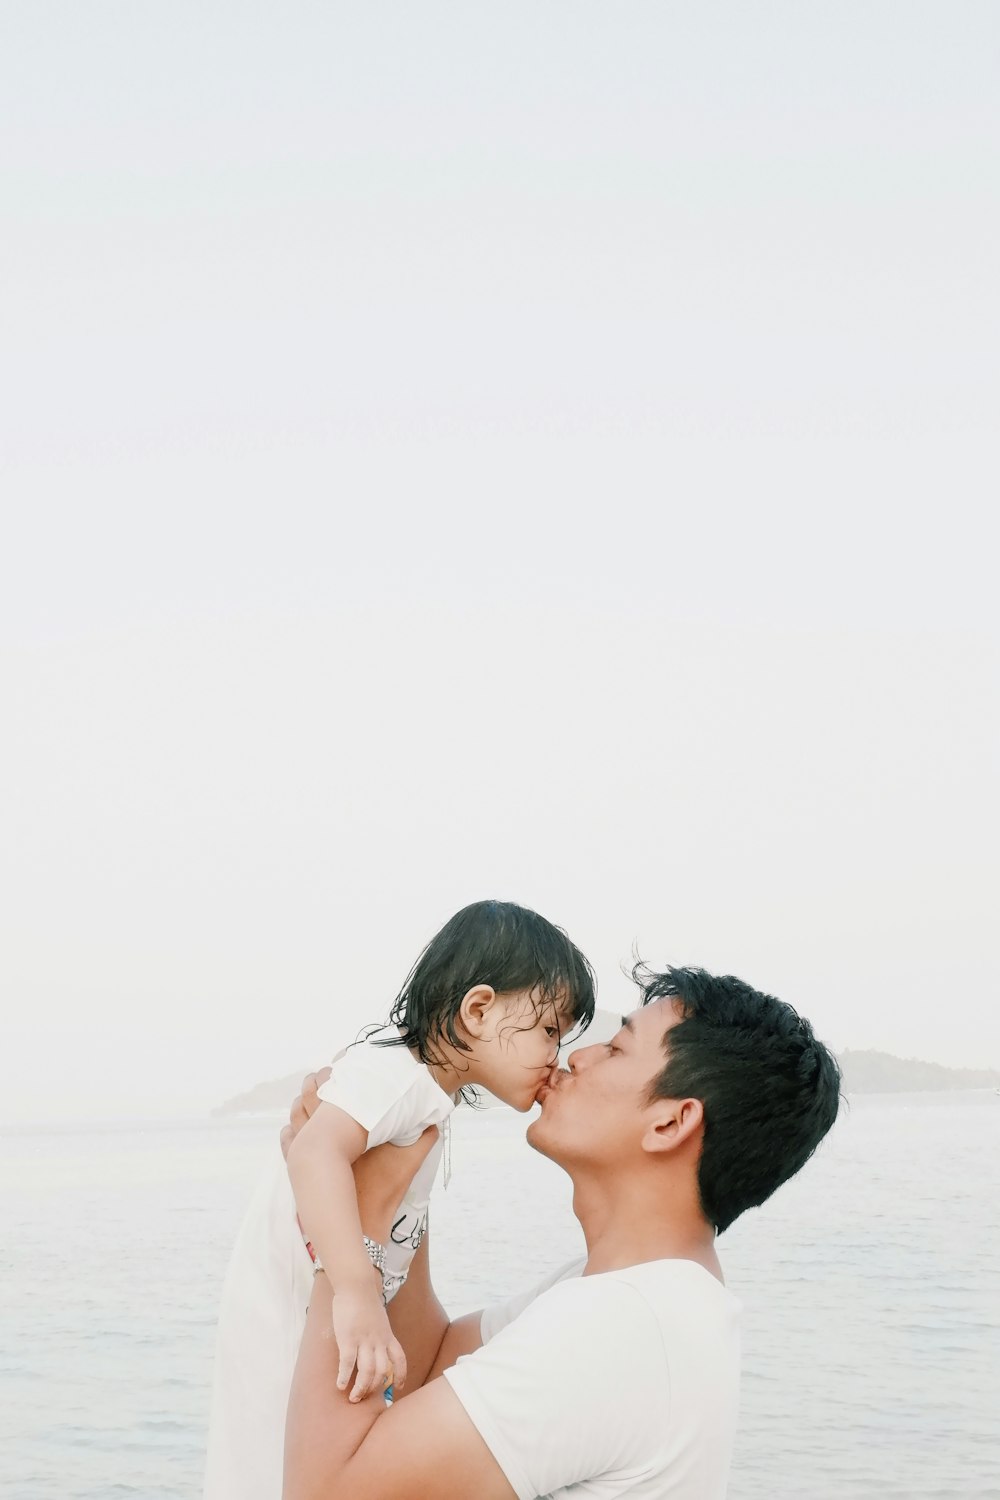 Man kissing toddler during daytime photo – Free Daughter Image on ...